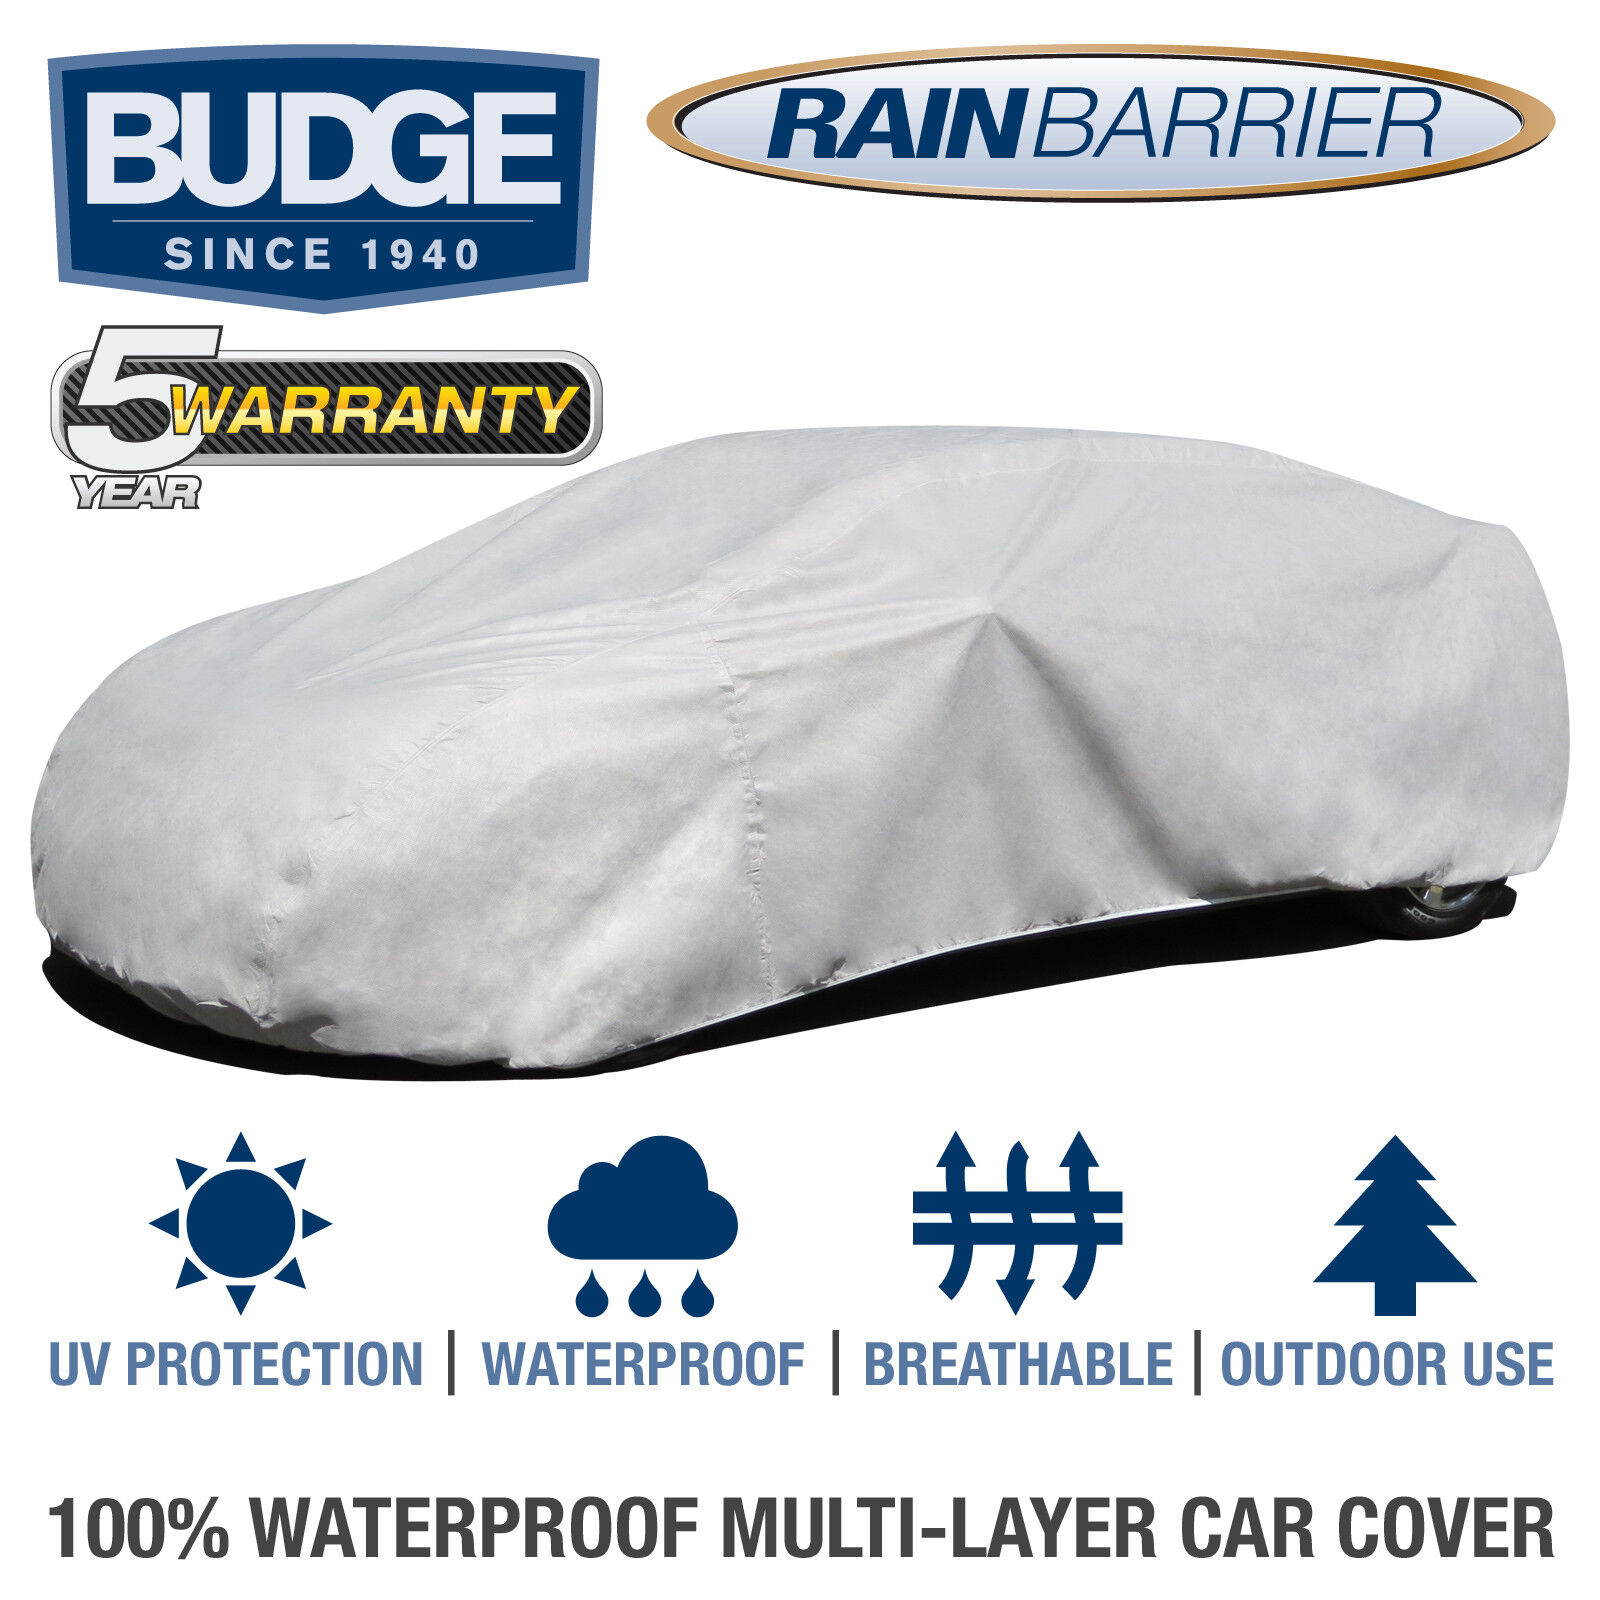 Budge Rain Barrier Car Cover Fits Lamborghini Gallardo 2005 | Waterproof